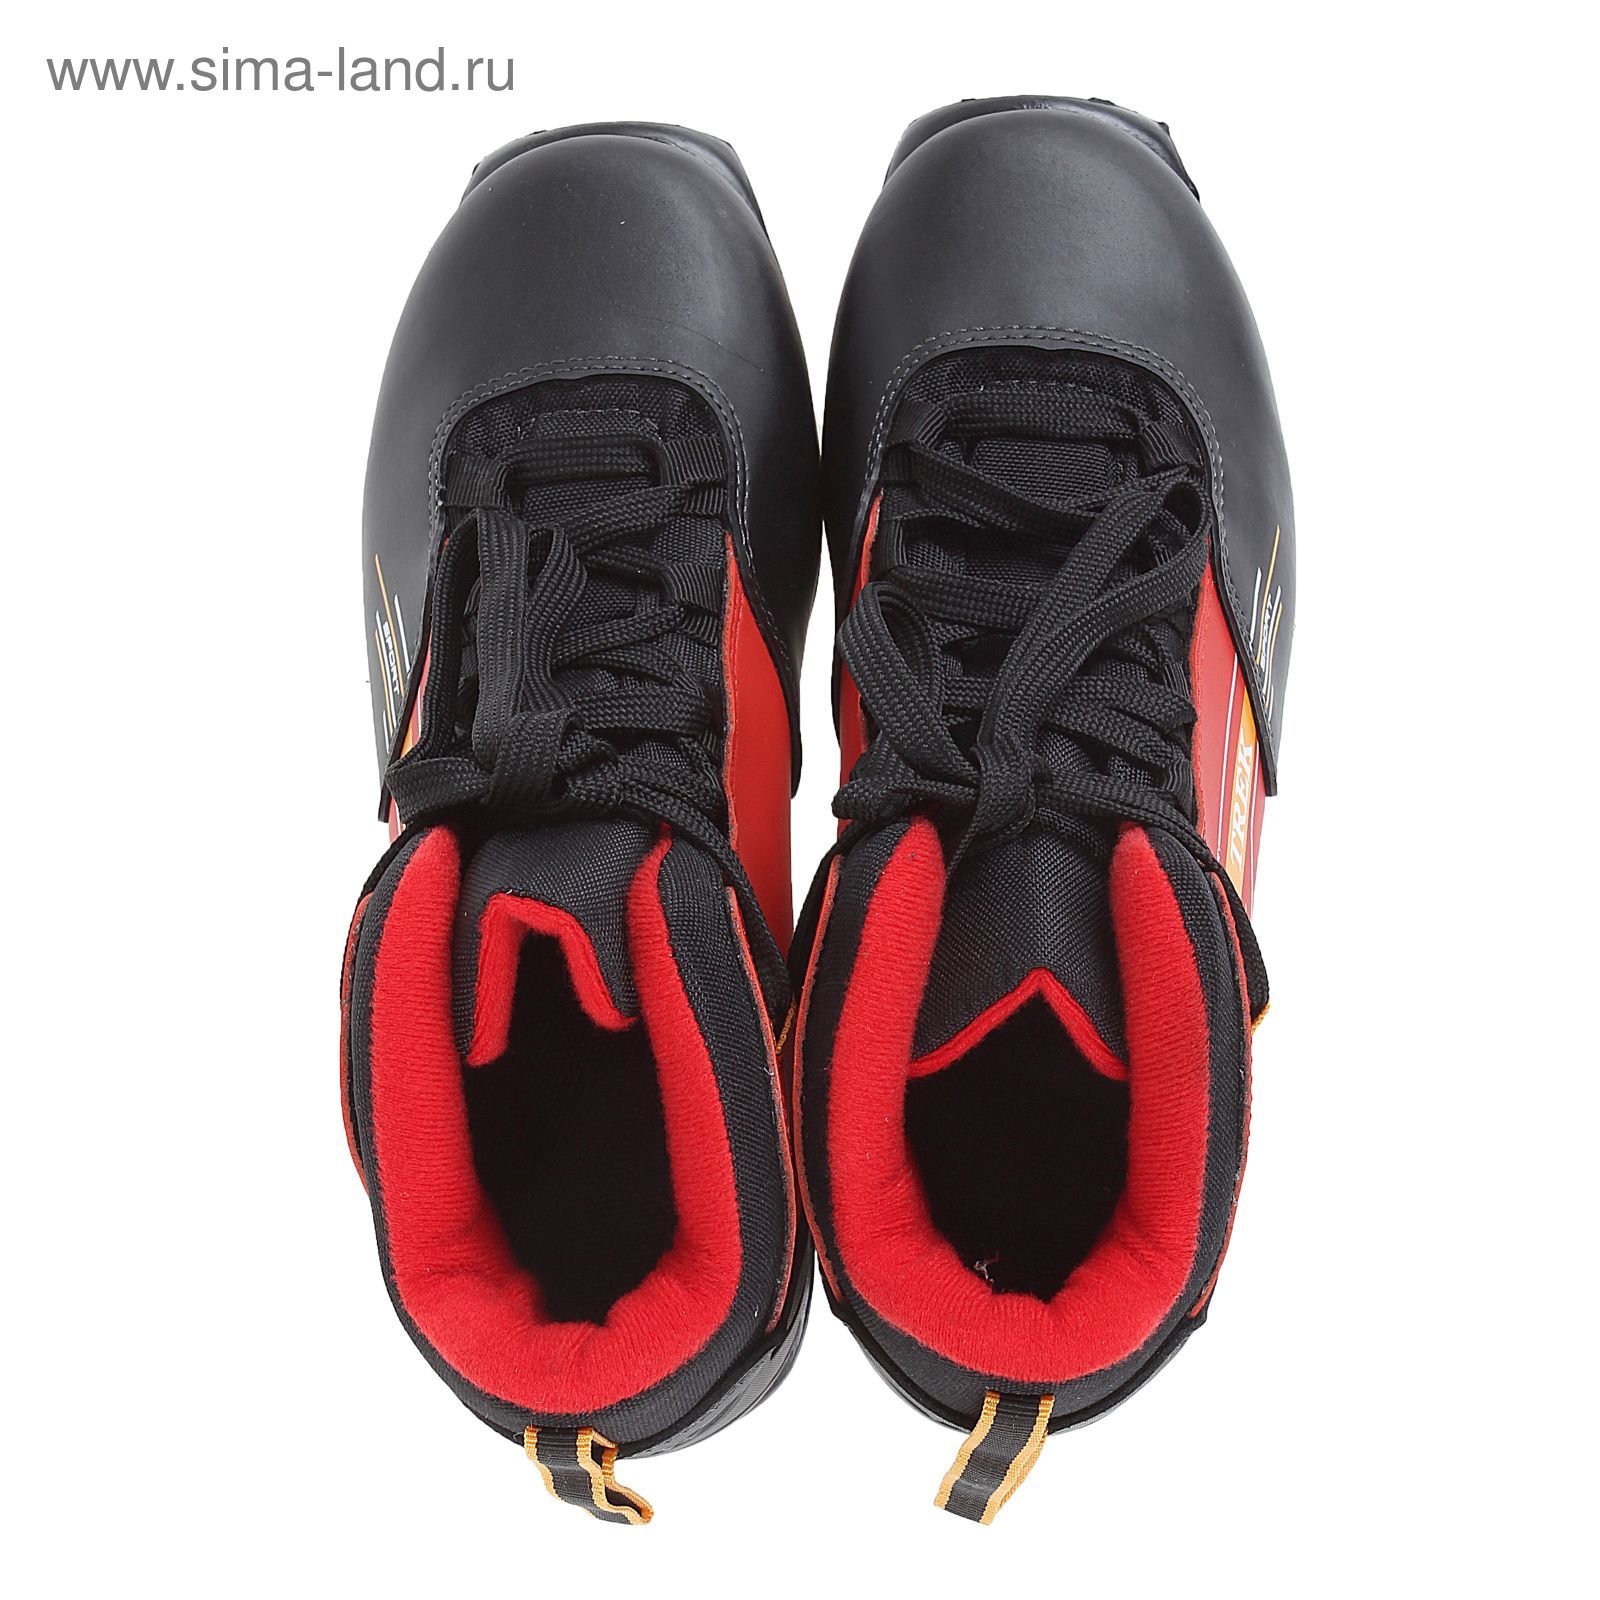 Ботинки лыжные TREK Quest SNS ИК, (черный, лого красный) (р.41)